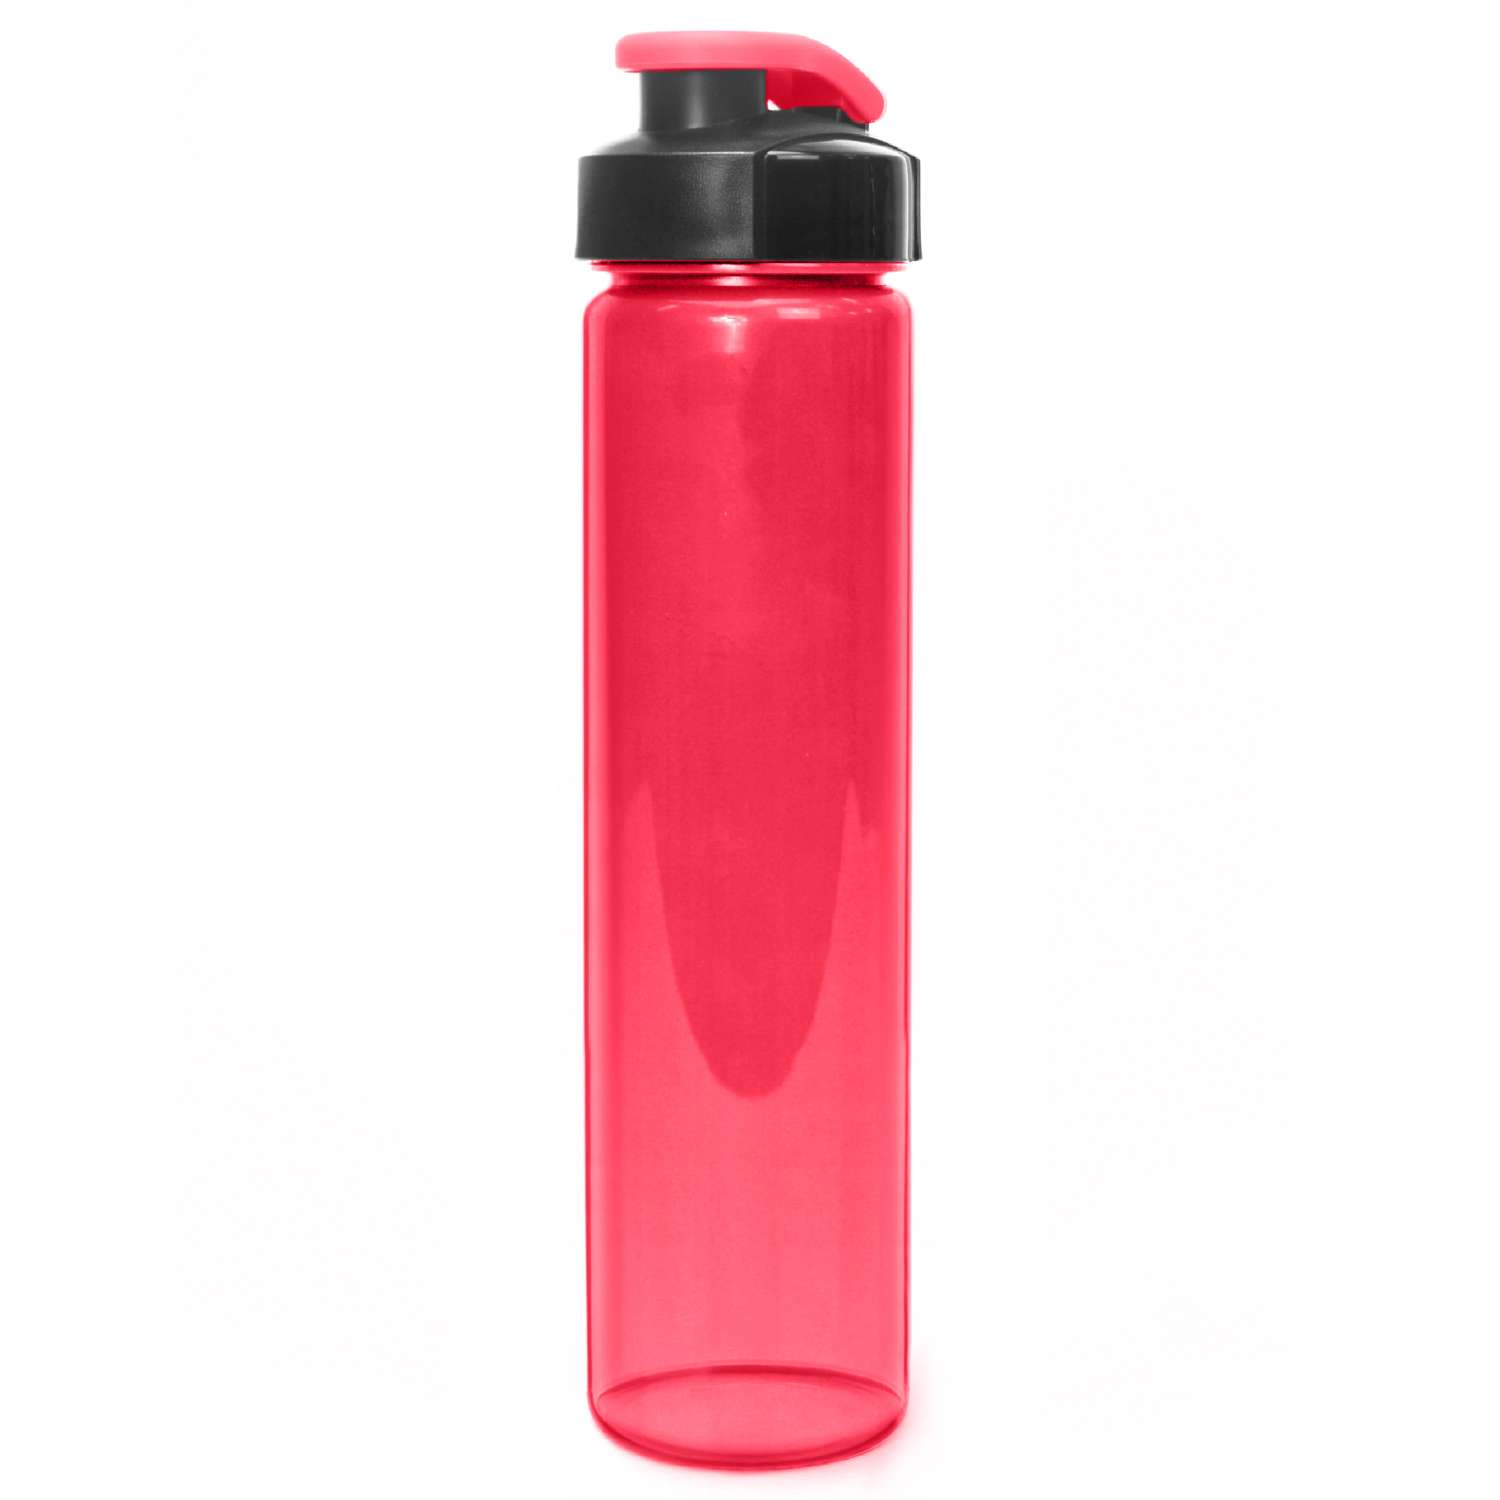 Бутылка для воды и напитков WOWBOTTLES Health and fitness straight c классической крышкой 500 мл - фото 1